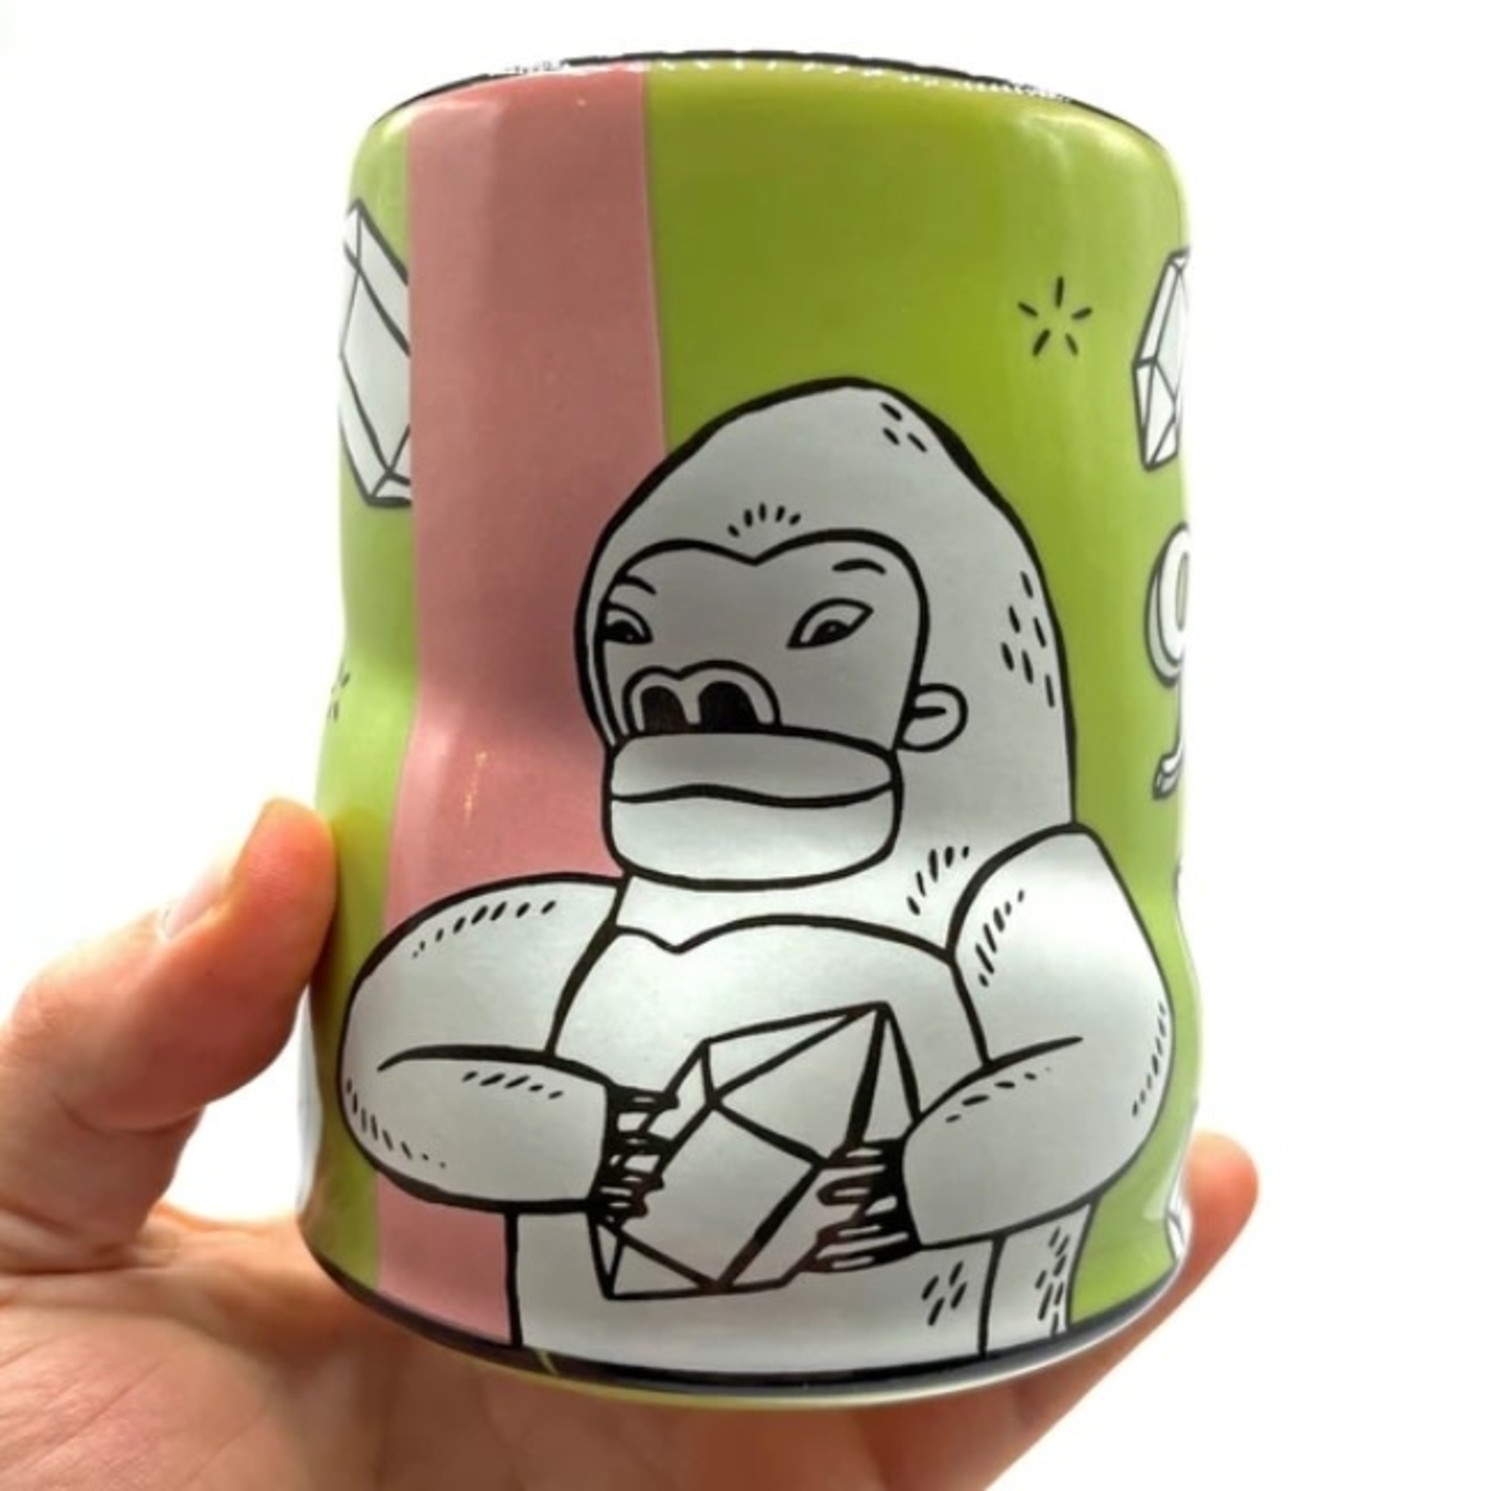 https://cdn.shoplightspeed.com/shops/641068/files/51184136/1500x4000x3/the-bowl-maker-lucky-cup-gorilla-16-oz.jpg